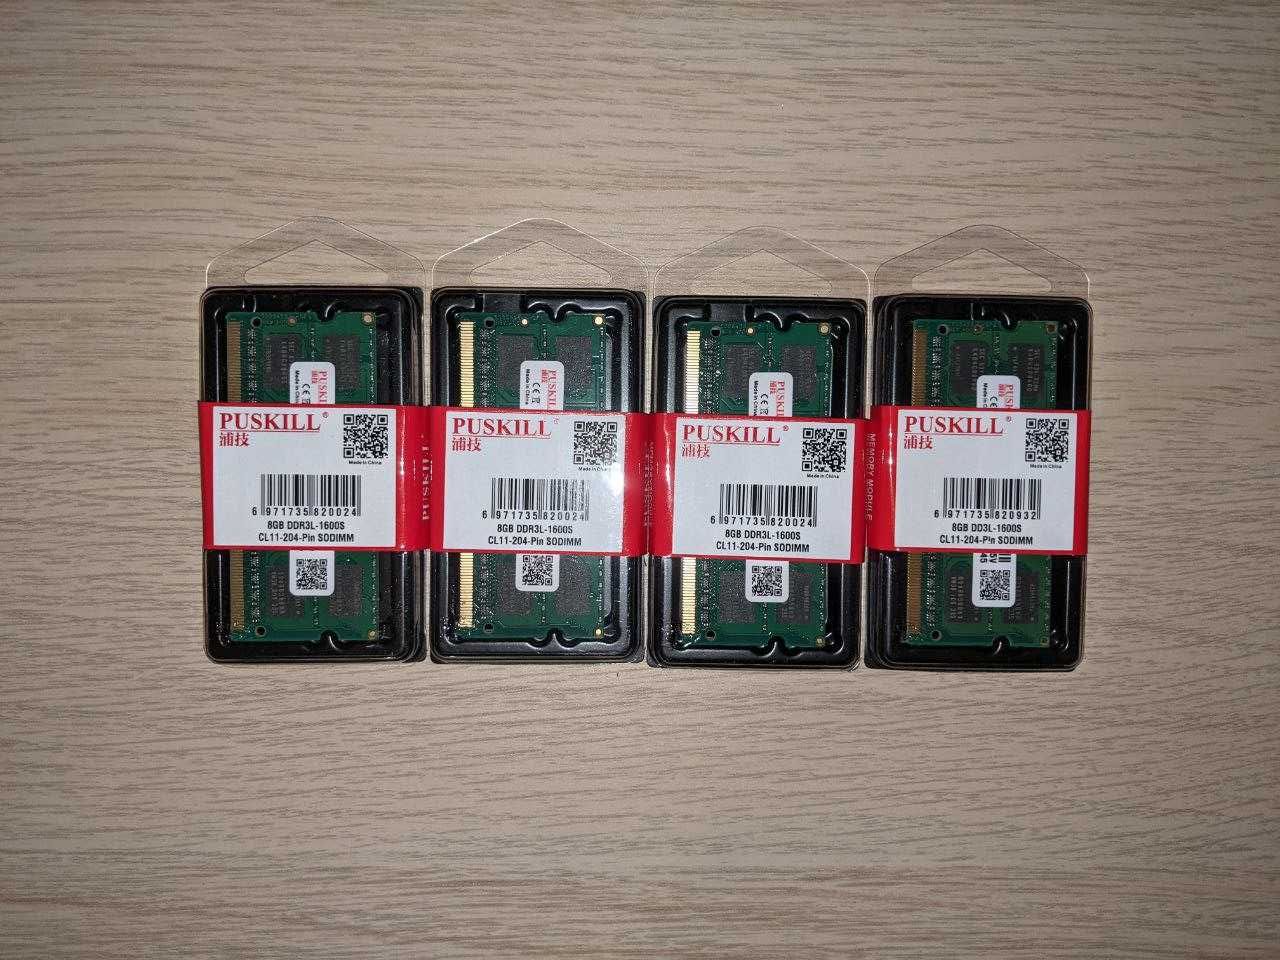 SoDIMM DDR3 1600 MHZ модулі по 8 GB для ноутбука, є кількість